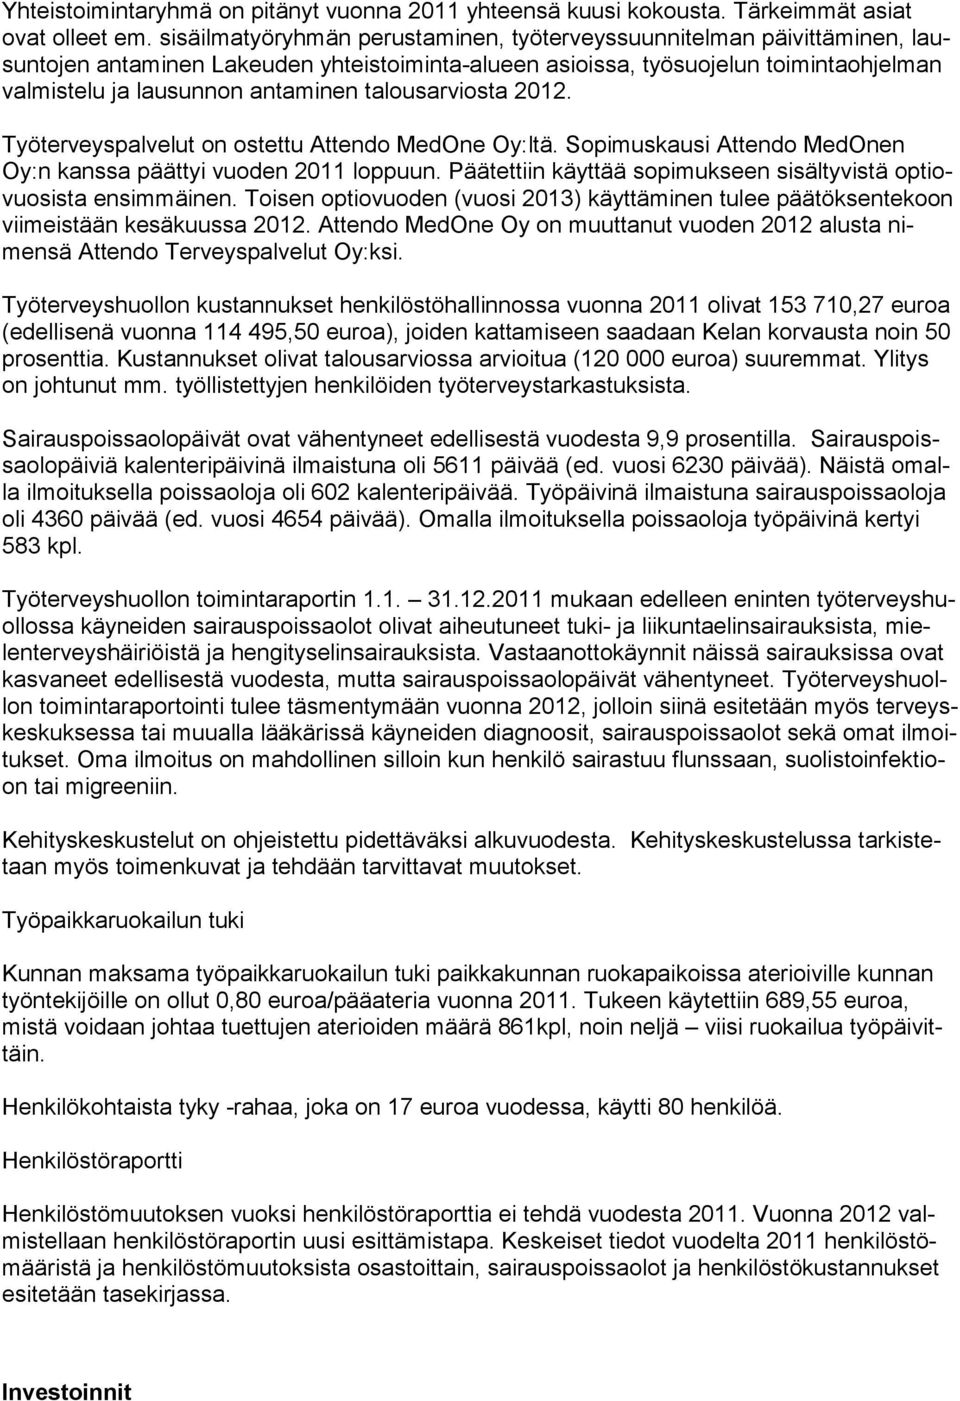 talousarviosta 2012. Työterveyspalvelut on ostettu Attendo MedOne Oy:ltä. Sopimuskausi Attendo MedOnen Oy:n kanssa päättyi vuoden 2011 loppuun.